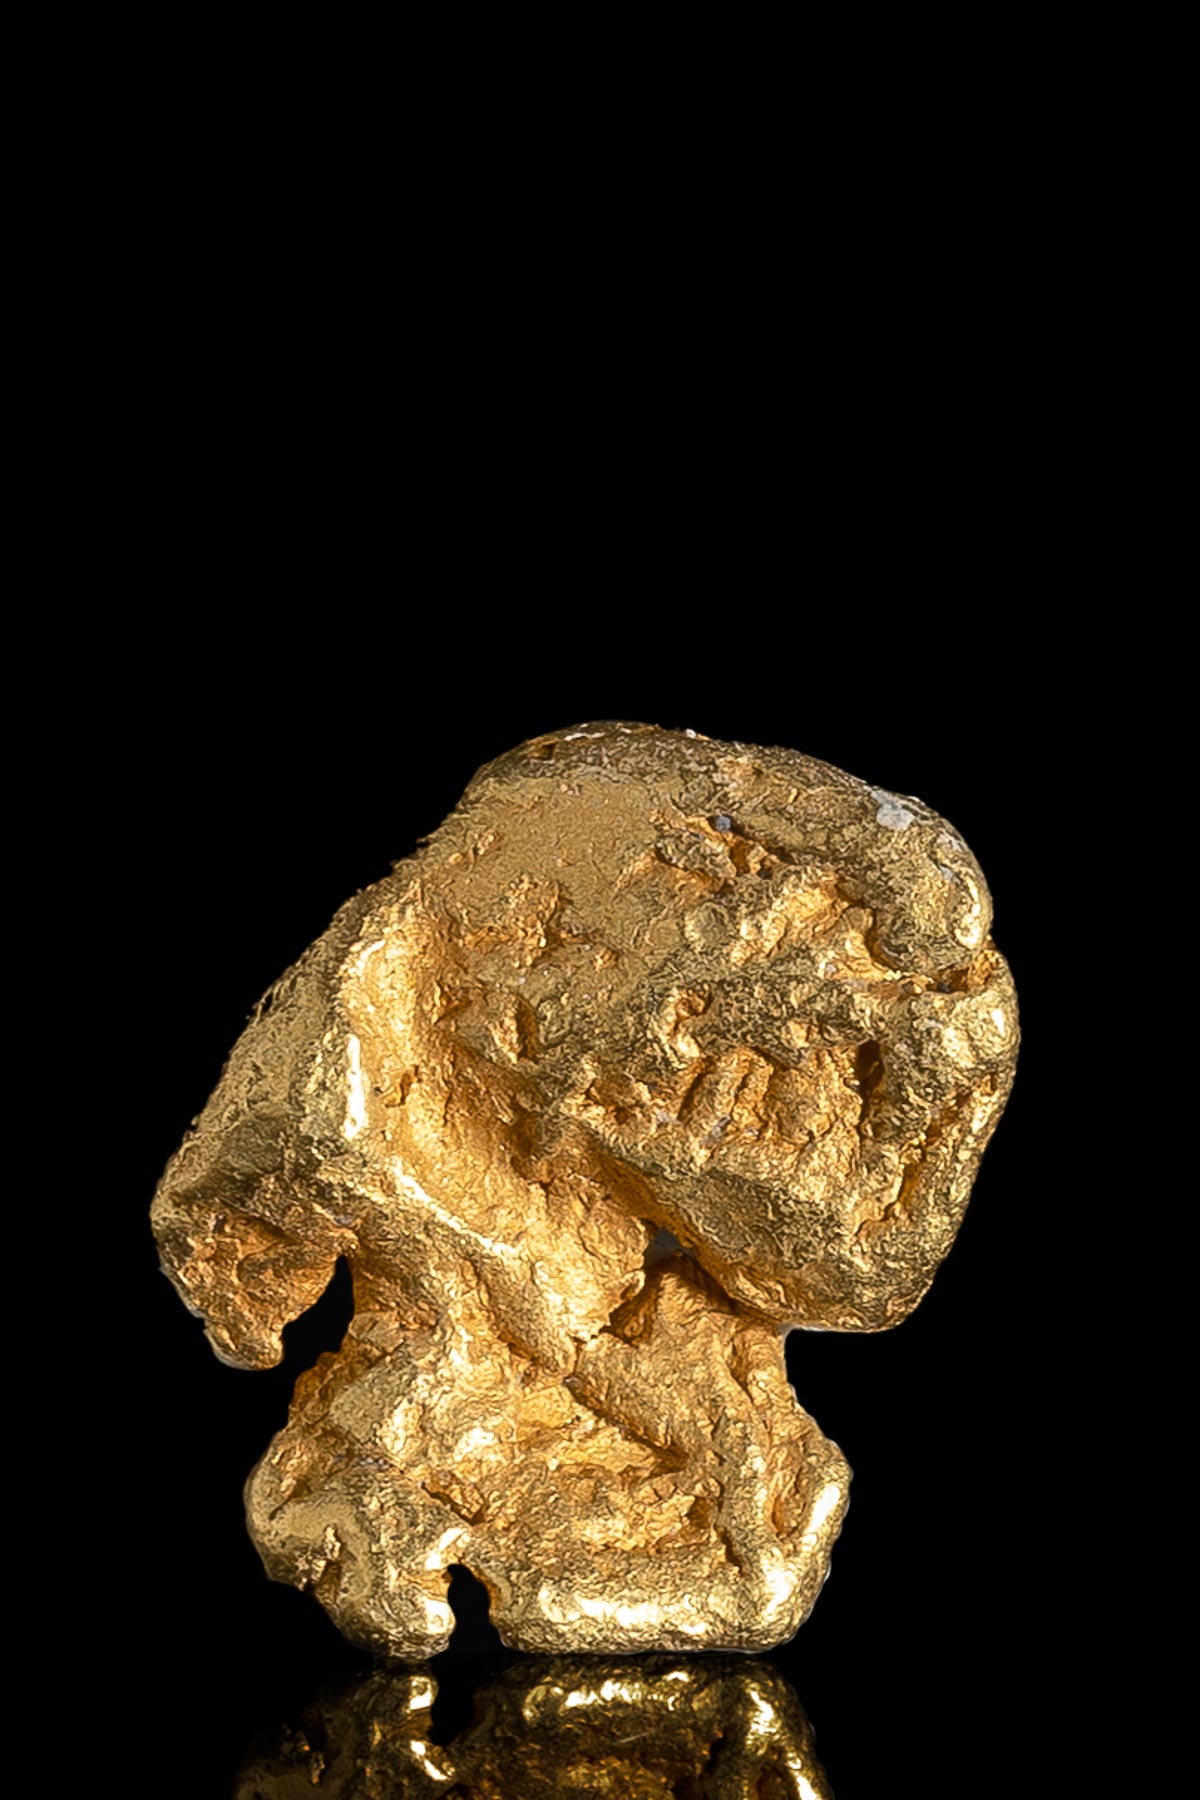 Whorls and Swirls Natural Alaska Gold Nugget - 3.53 grams